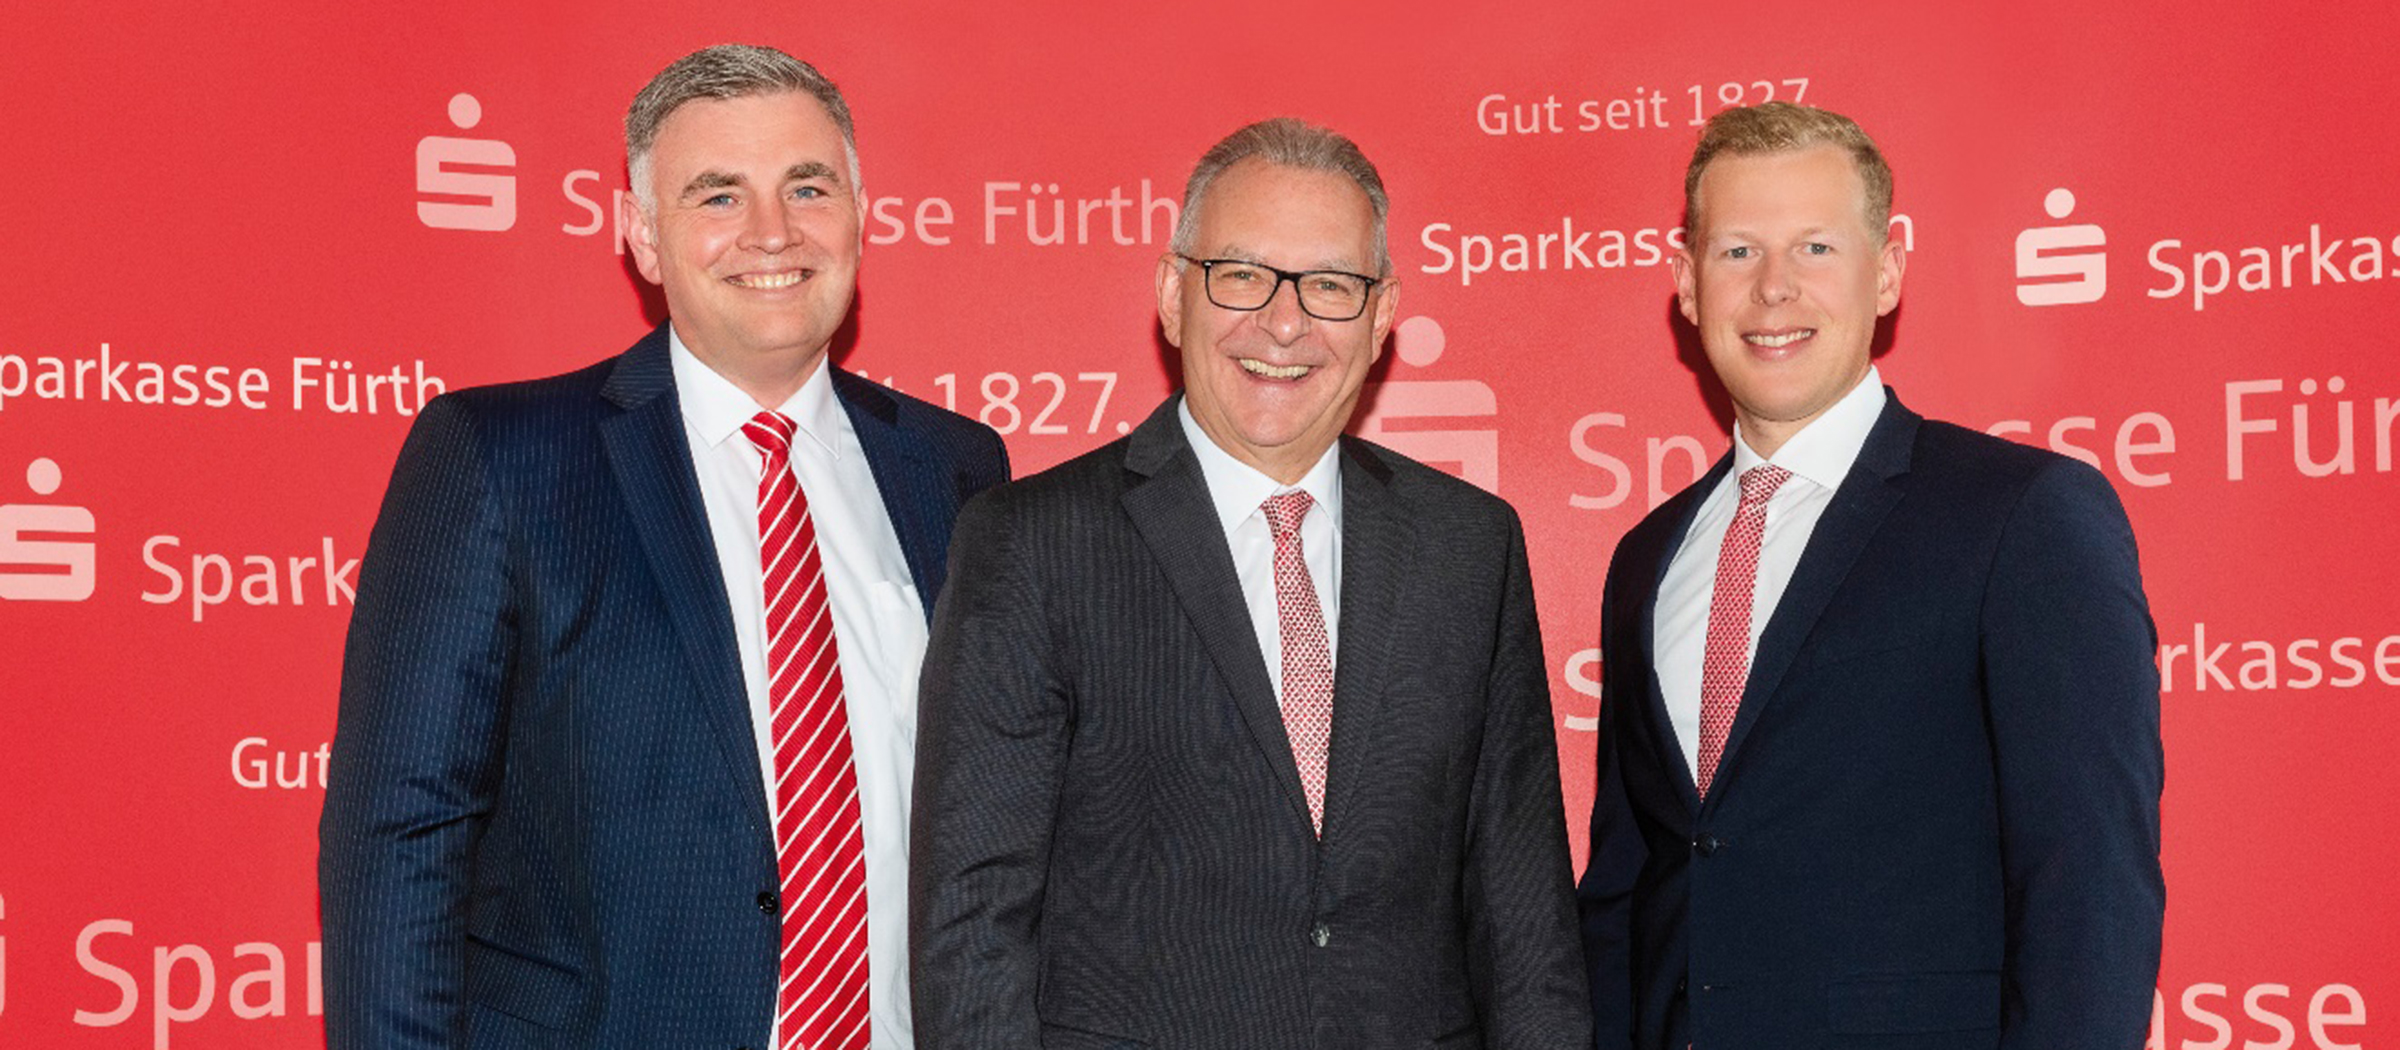 Es waren herausfordernde Jahre für Banken. Ende des Jahres geht der Vorstandsvorsitzende der Sparkasse Fürth, Hans Wölfel, in den Ruhestand.